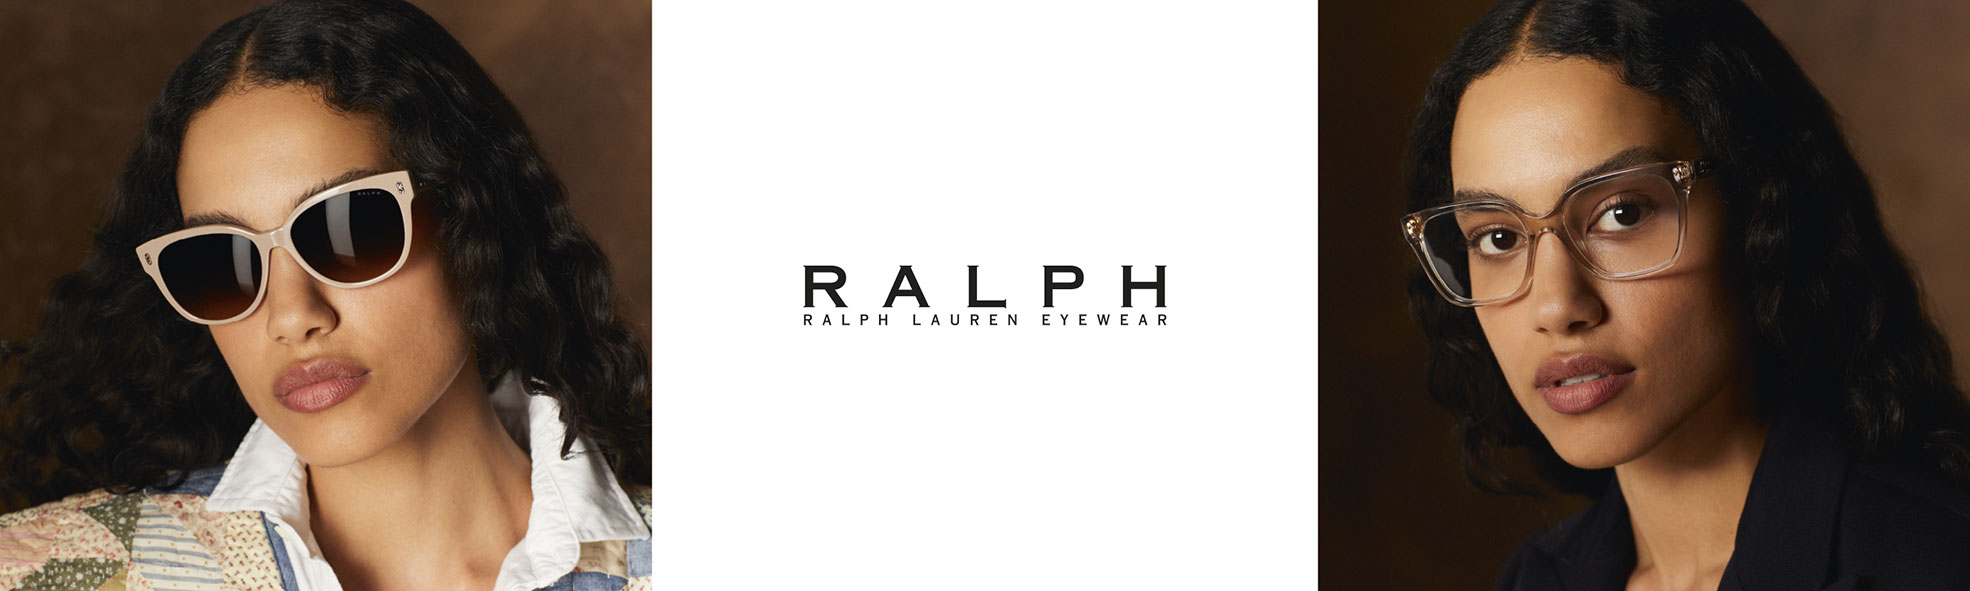 ΠΡΟΣΦΟΡΕΣ - RALPH